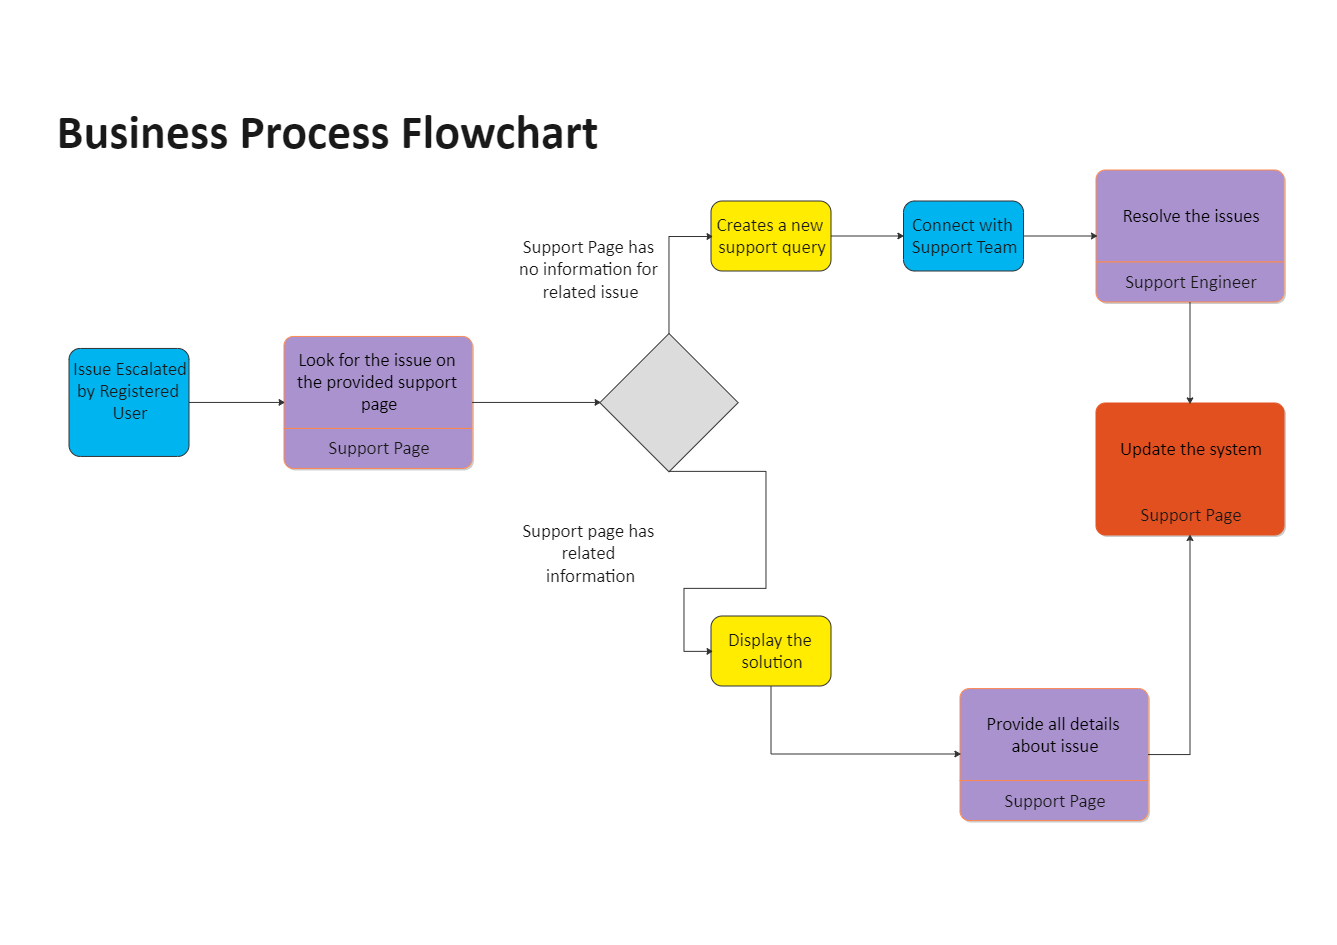 Business Process Flowchart Edrawmax Templates - Bank2home.com